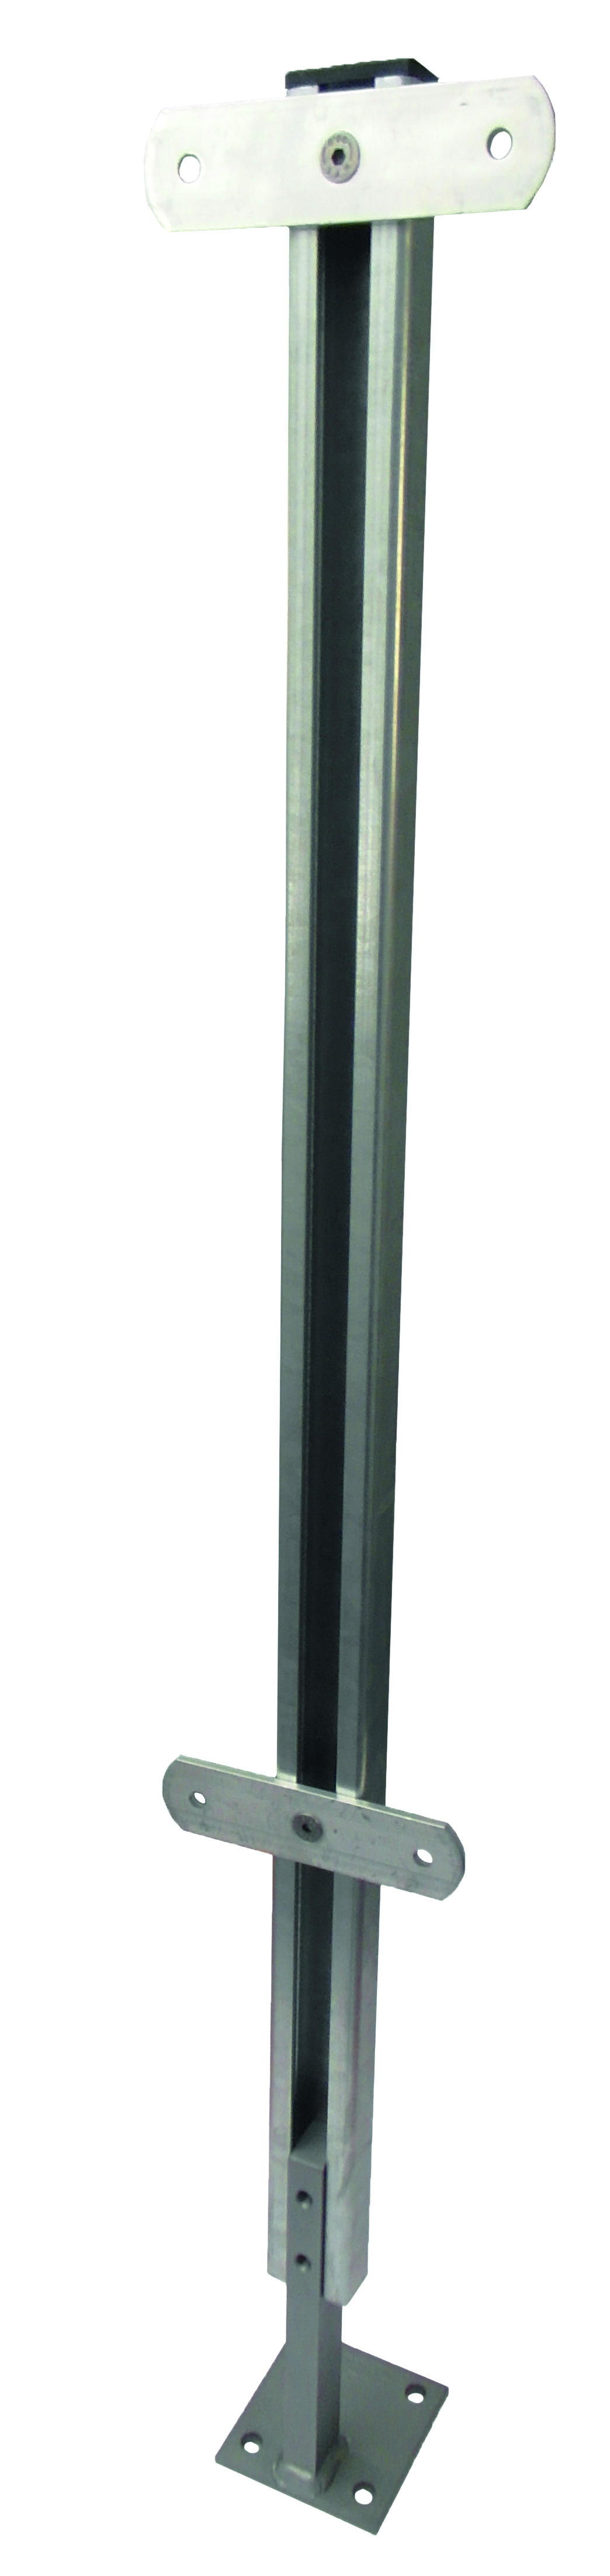 Geländerstützen GSP, C-Profil zum Aufdübeln mit Isolierungsüberbrückung in zinip, Höhe 800 mm, incl. zwei Alu-Durchgangs